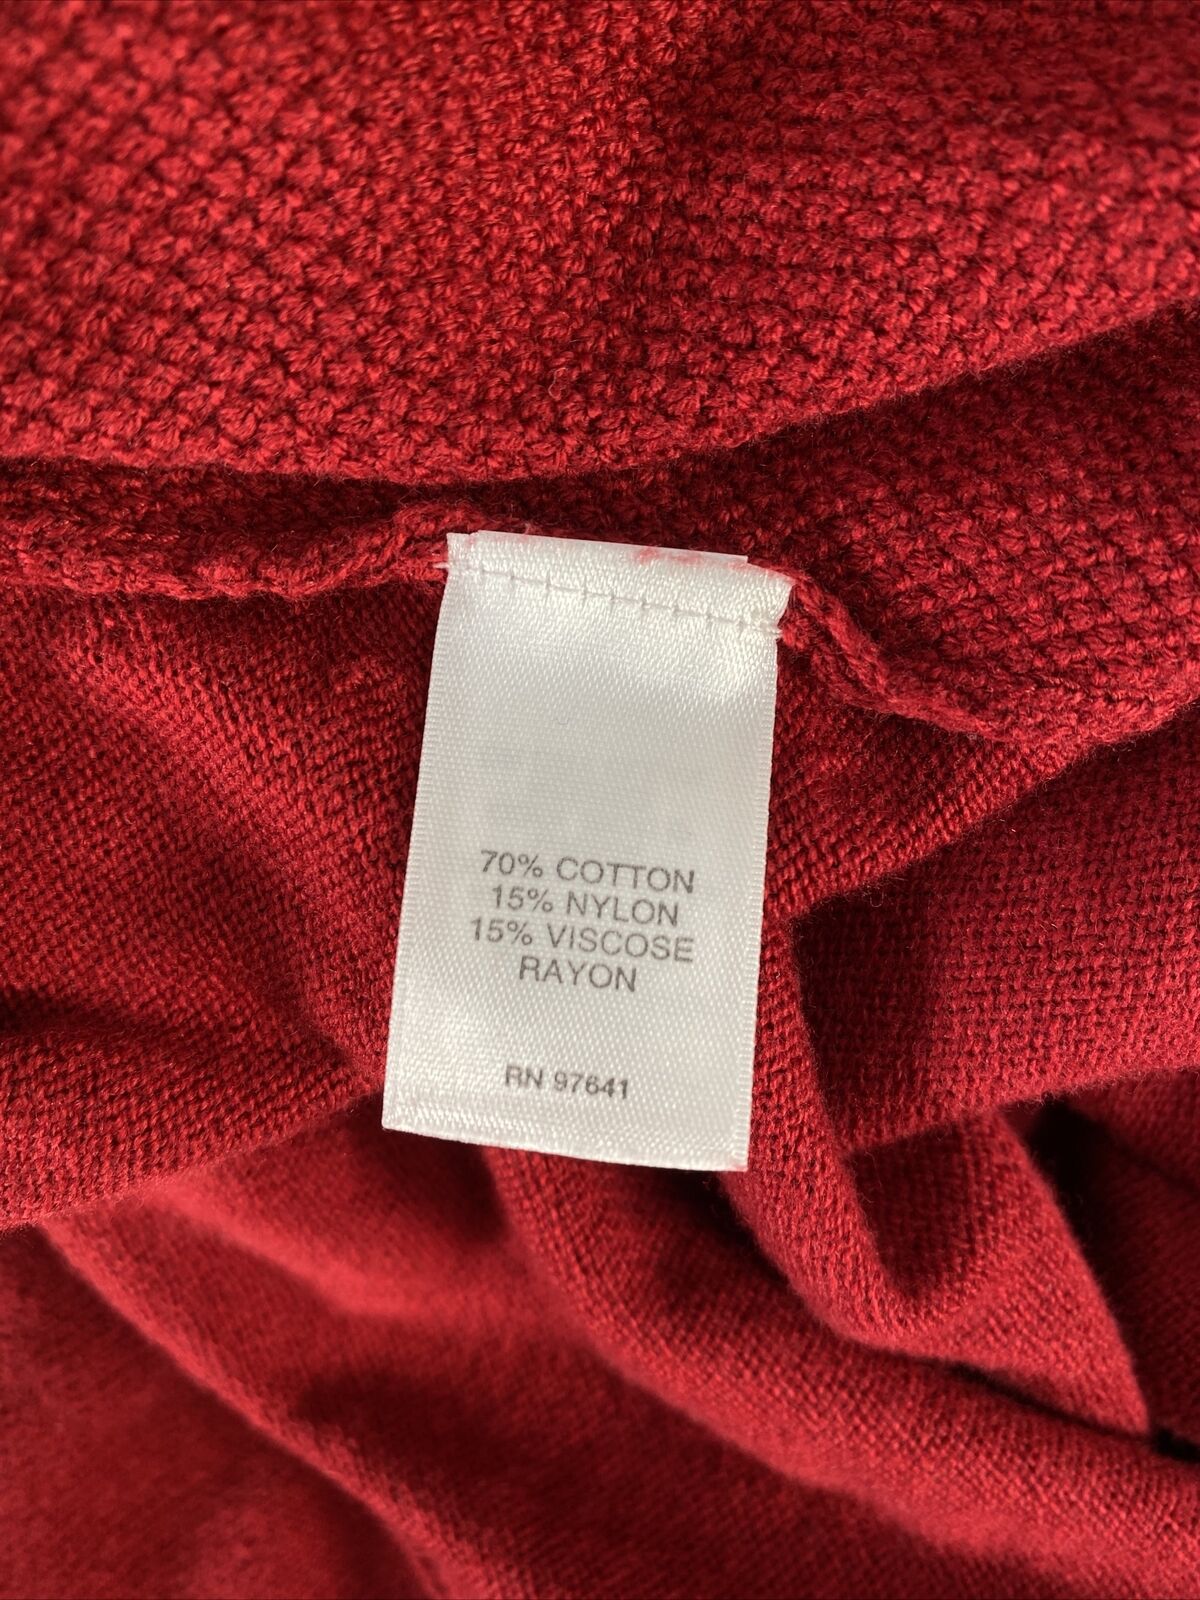 J. Jill Women's Red Cotton 3/4 Sleeve V-Neck Sweater - XL